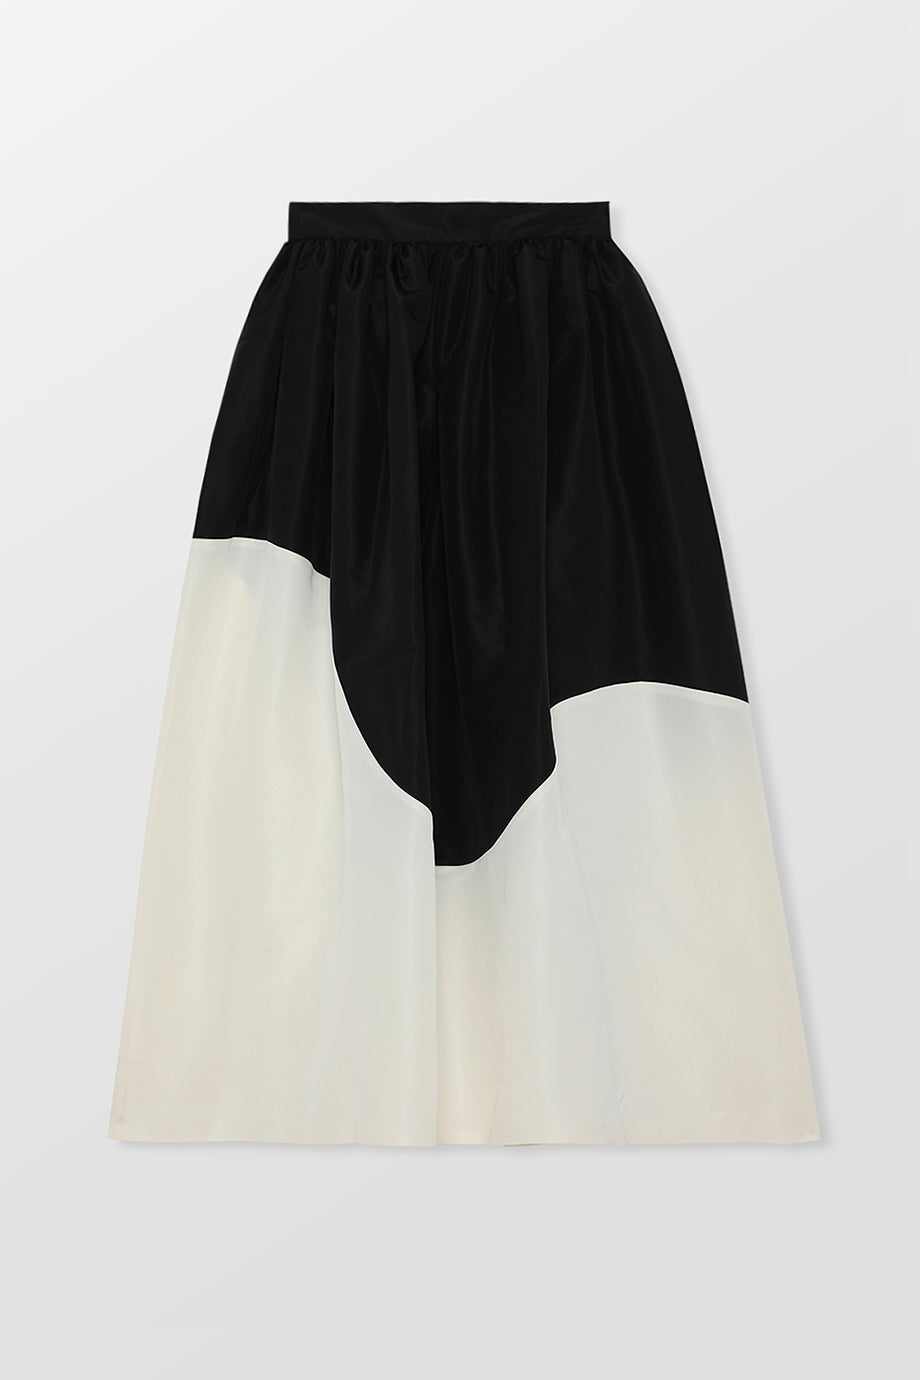 Ofiaoren Floor Length Skirt